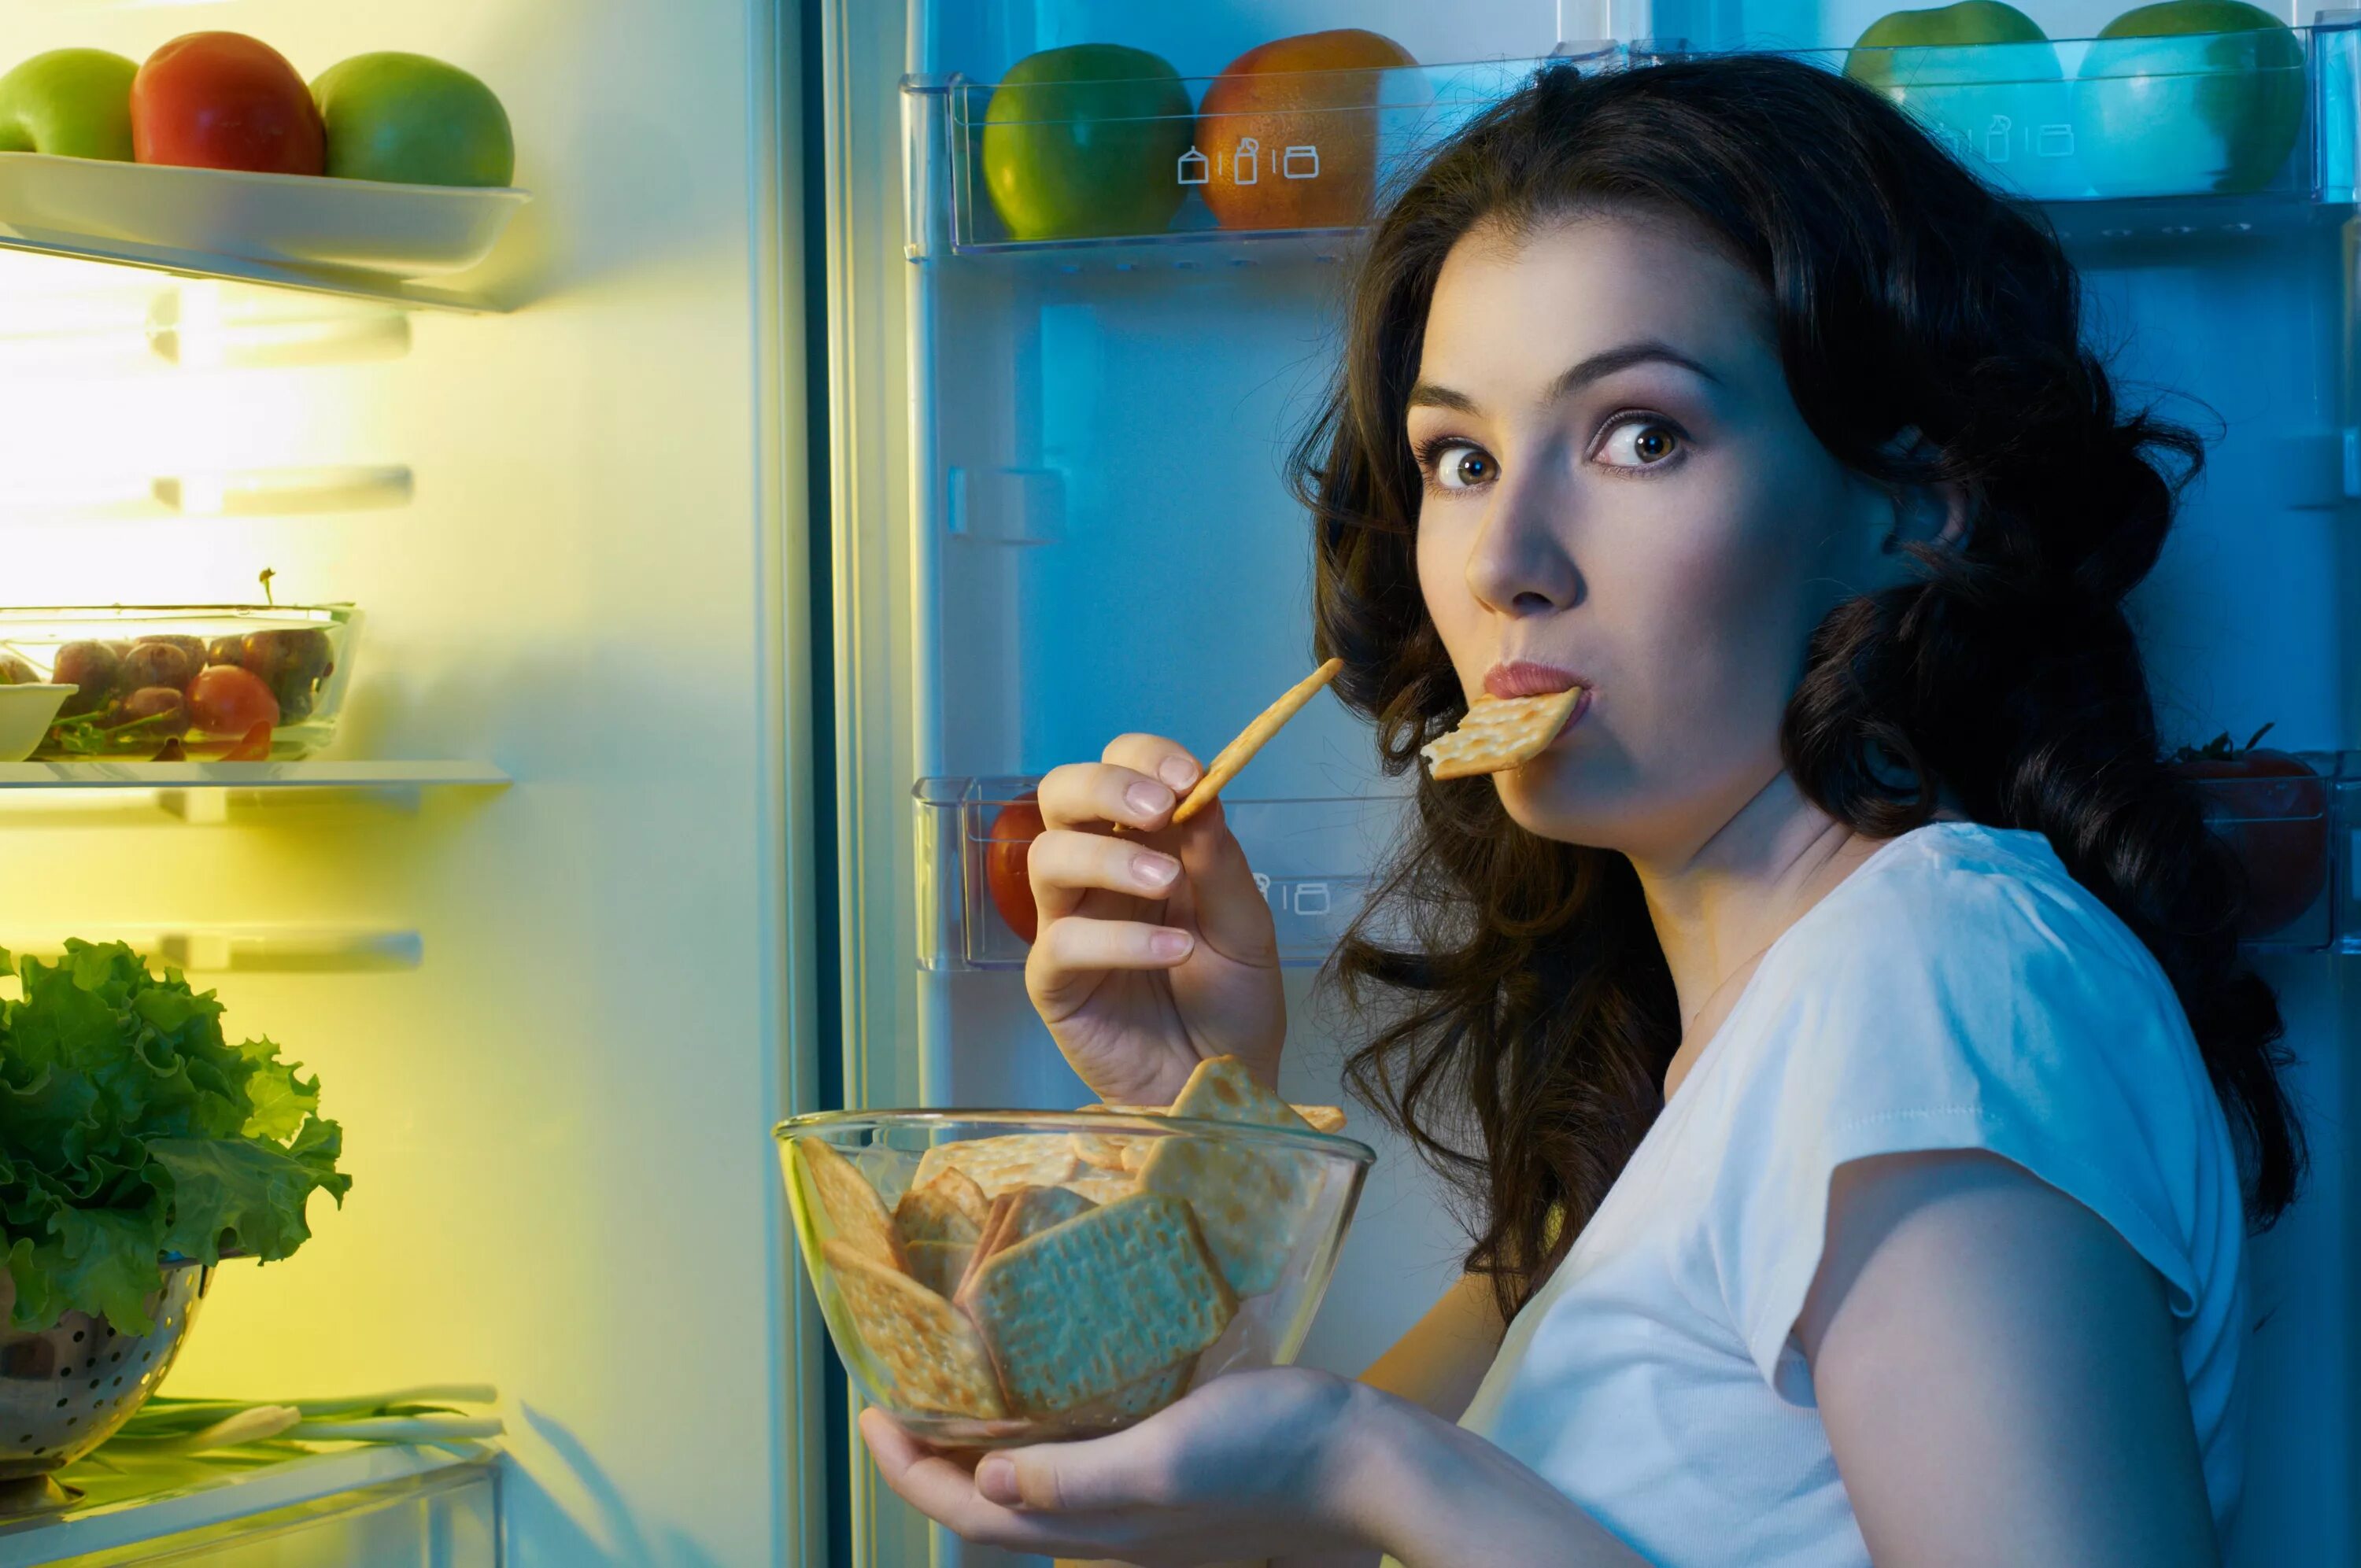 Голодный синдром. Человек с едой. Девушка возле холодильника. Девушка с едой. Еда на женщине.